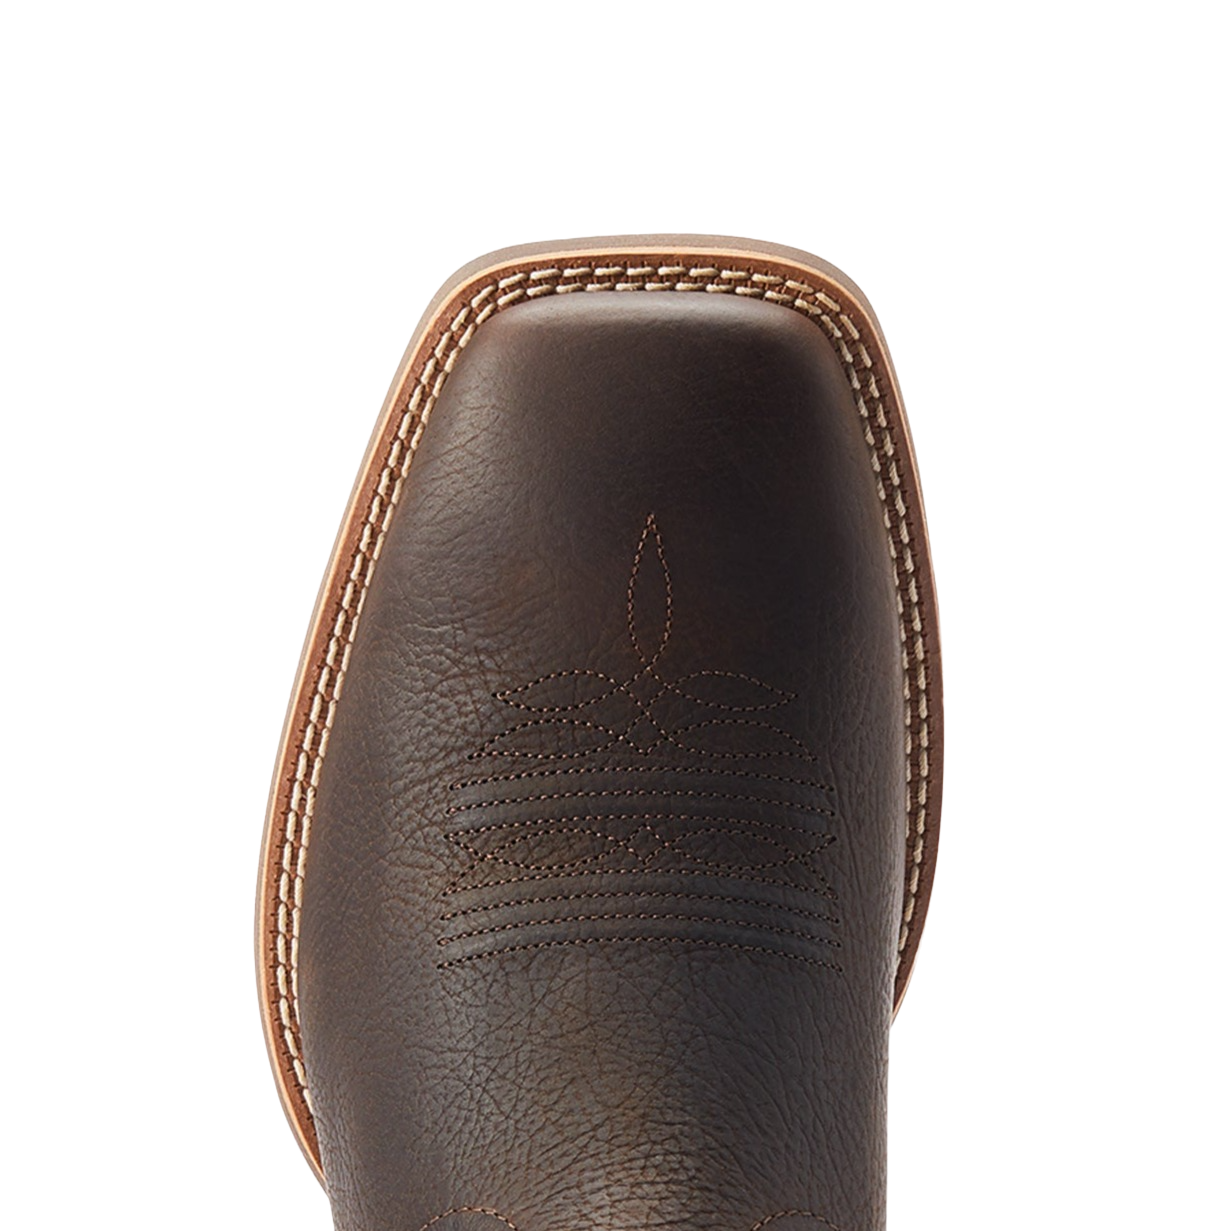 Ariat® Men's Cowpuncher VentTEK™ Dark Brown Boots 10044573